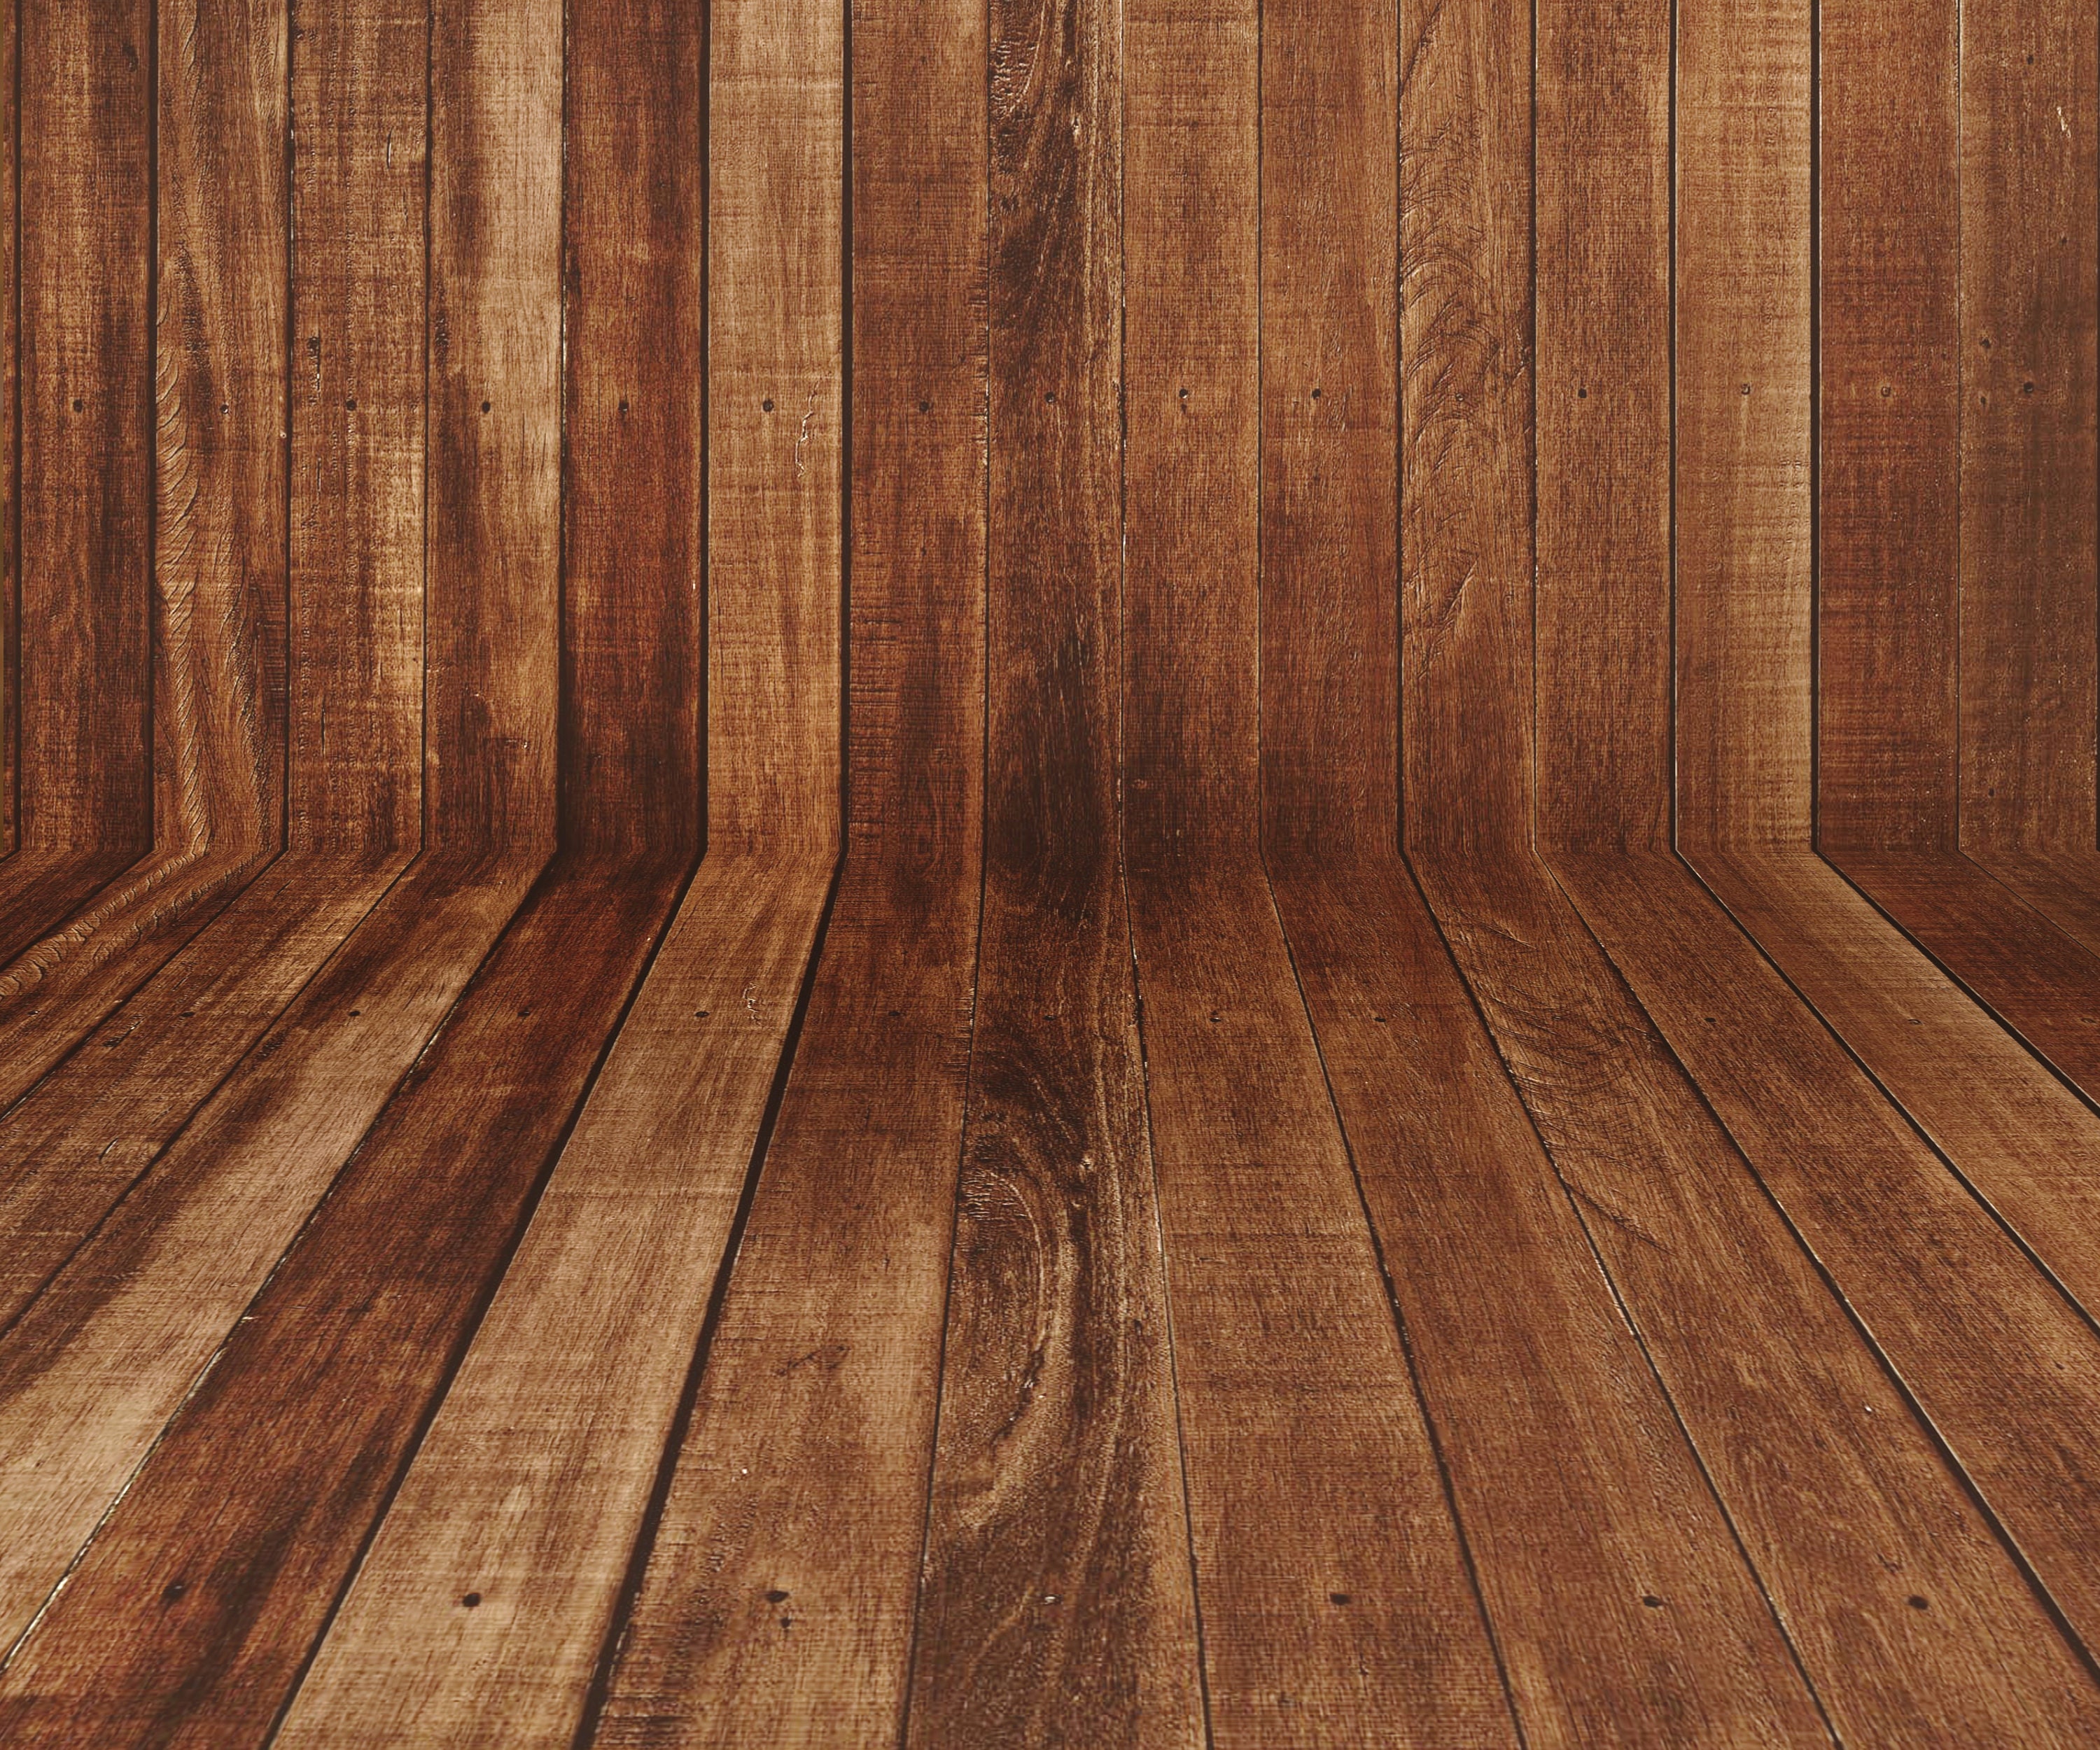 Nếu bạn yêu thích vẻ đẹp của nền gỗ cổ điển, nhưng muốn thêm chút hiện đại thì nền gỗ số chính là sự lựa chọn hoàn hảo. Với kỹ thuật in số tiên tiến, nền gỗ số mang đến cho bạn cảm giác chân thực nhưng lại rất hiện đại và độc đáo.